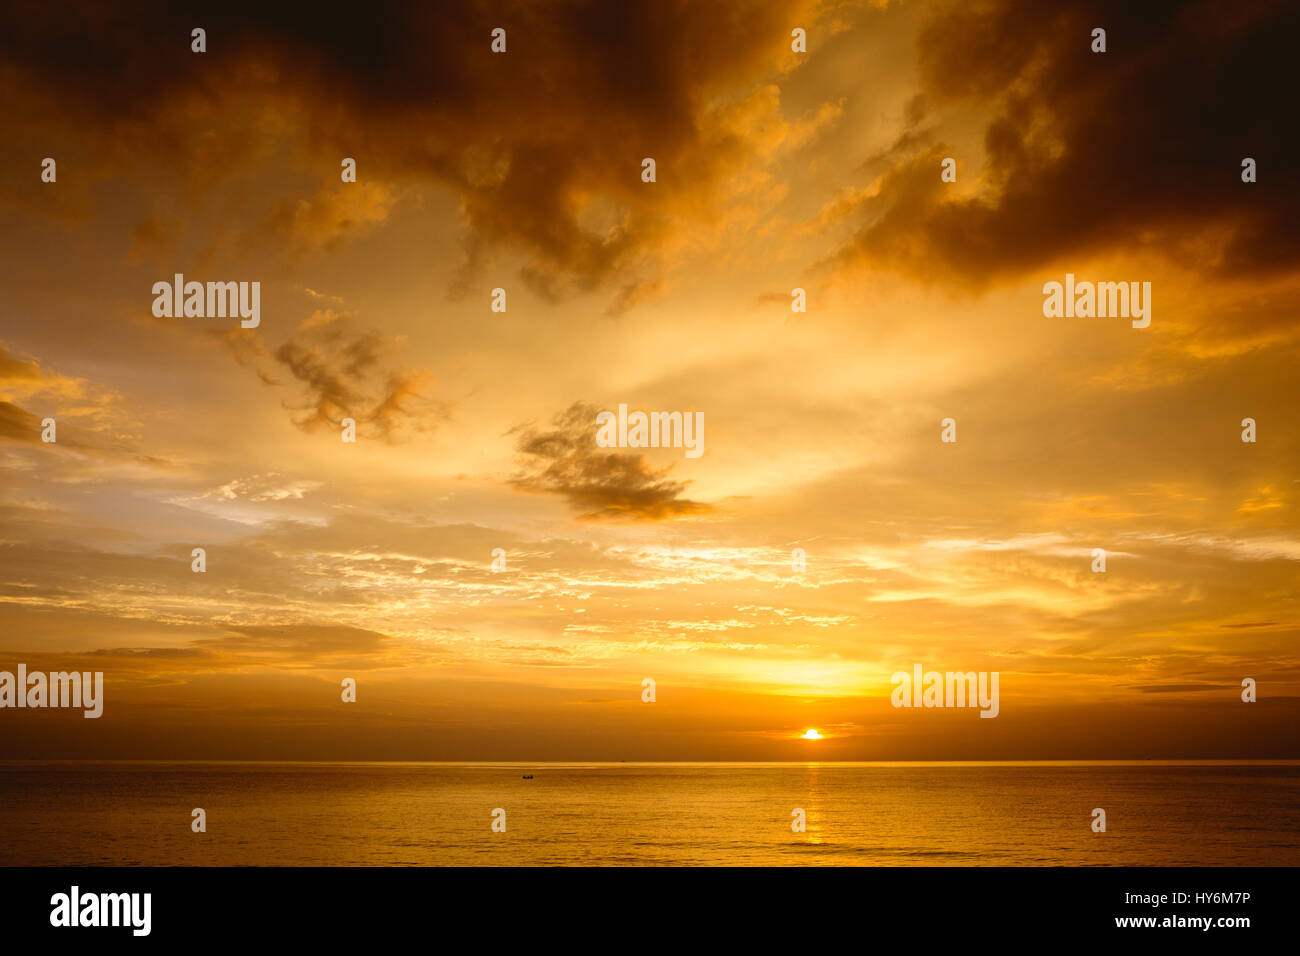 Schöner Sonnenuntergang am Meer mit tief bewölktem Himmel. Platz für text Stockfoto